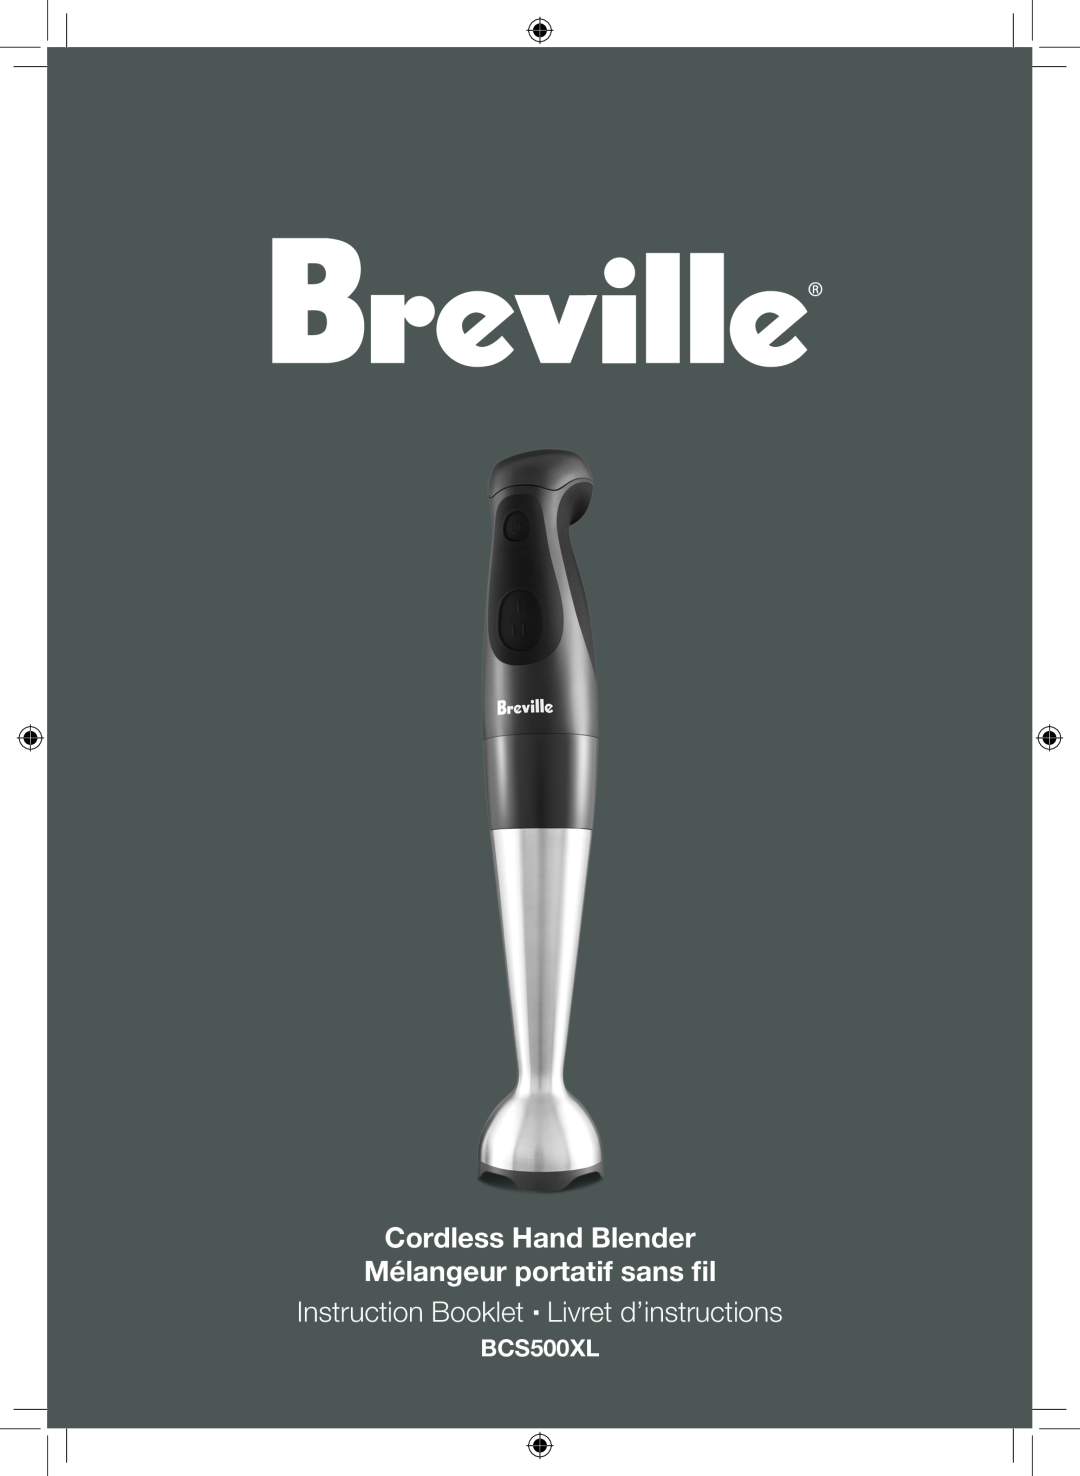 Breville BCS500XL manual Cordless Hand Blender Mélangeur portatif sans fil, Instruction Booklet Livret d’instructions 